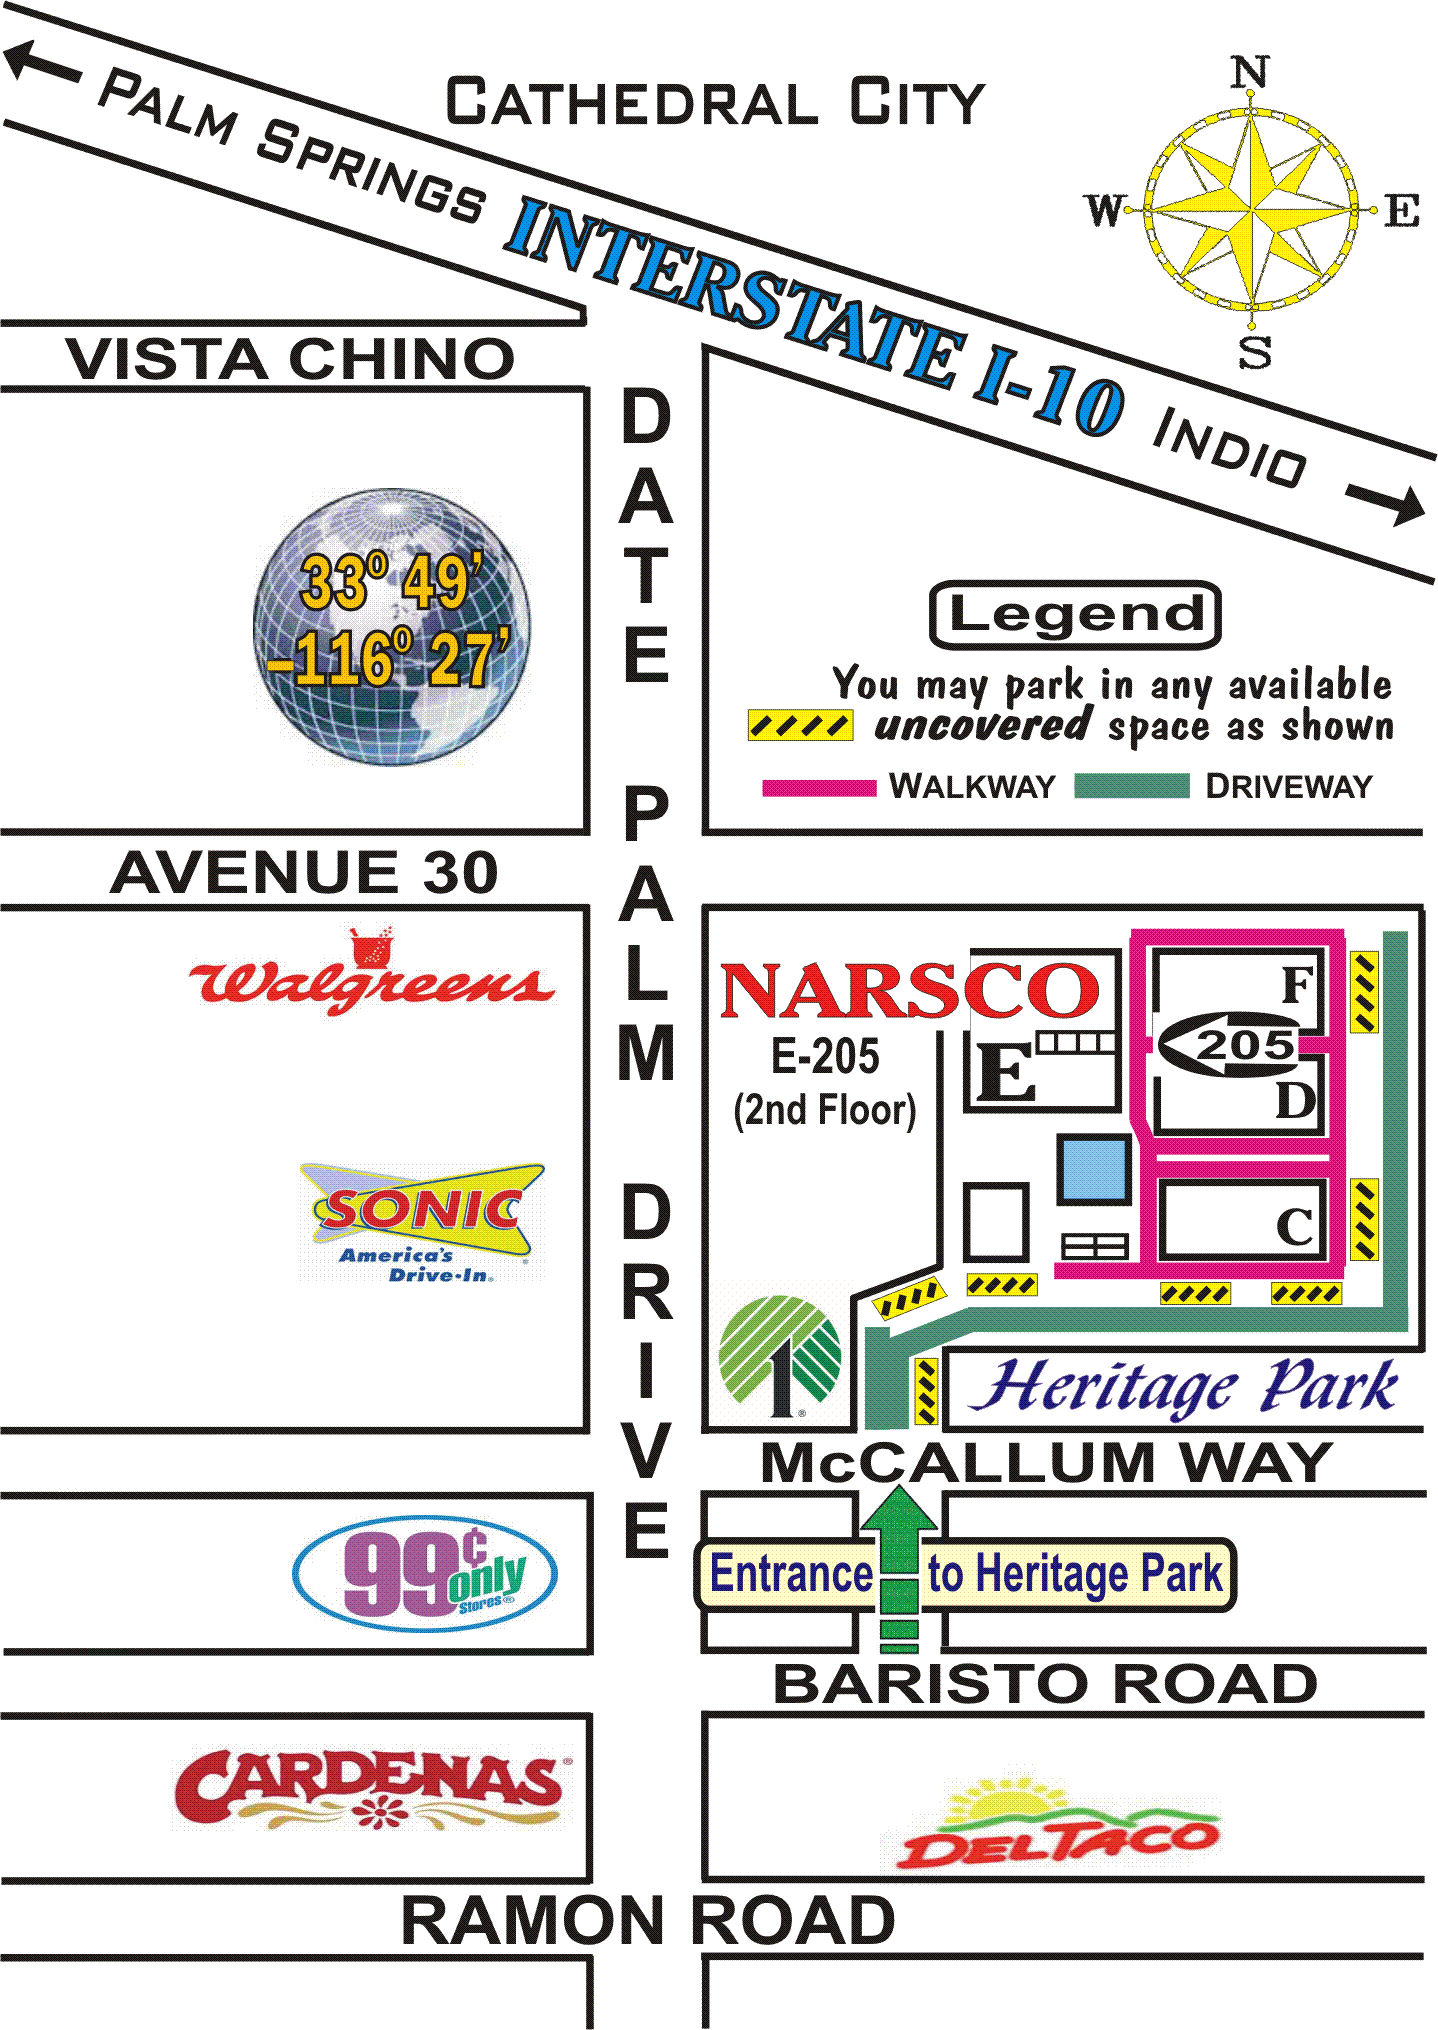 NARSCO location map